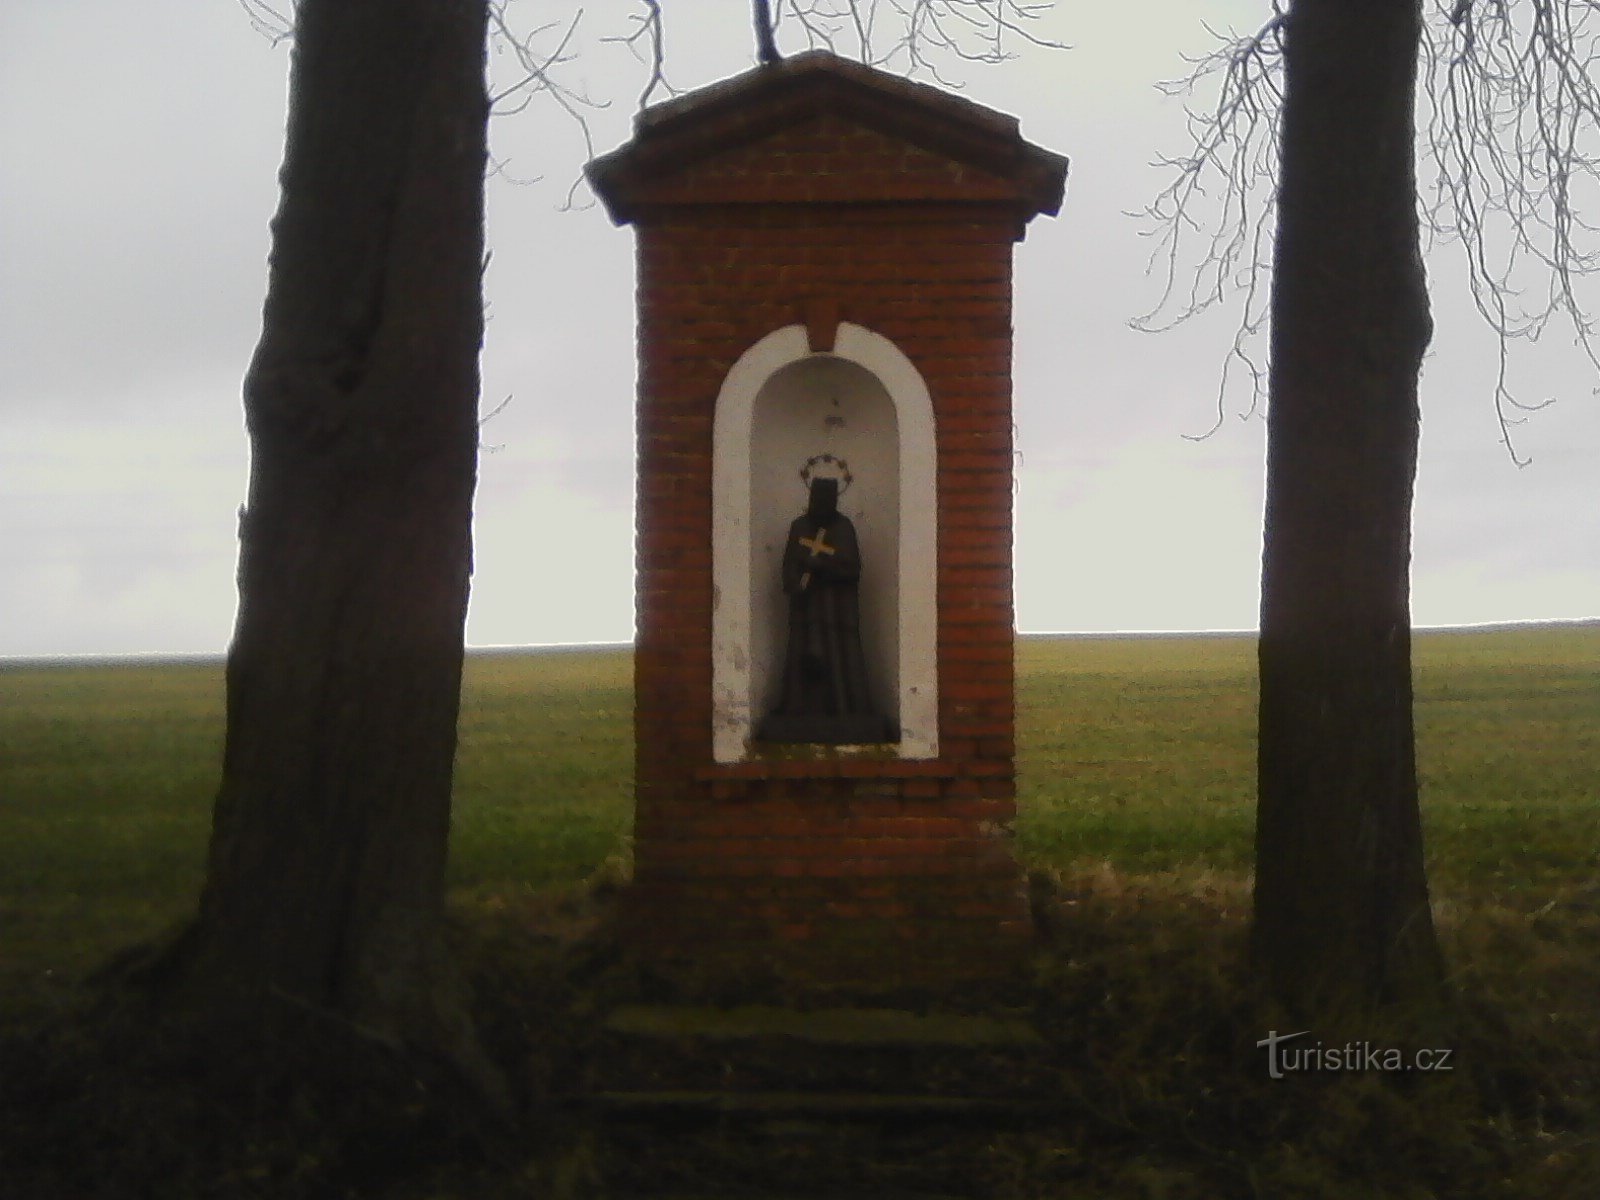 2-я часовня по дороге в Бедржихов со статуей св. Иоанна Непомуцкого.